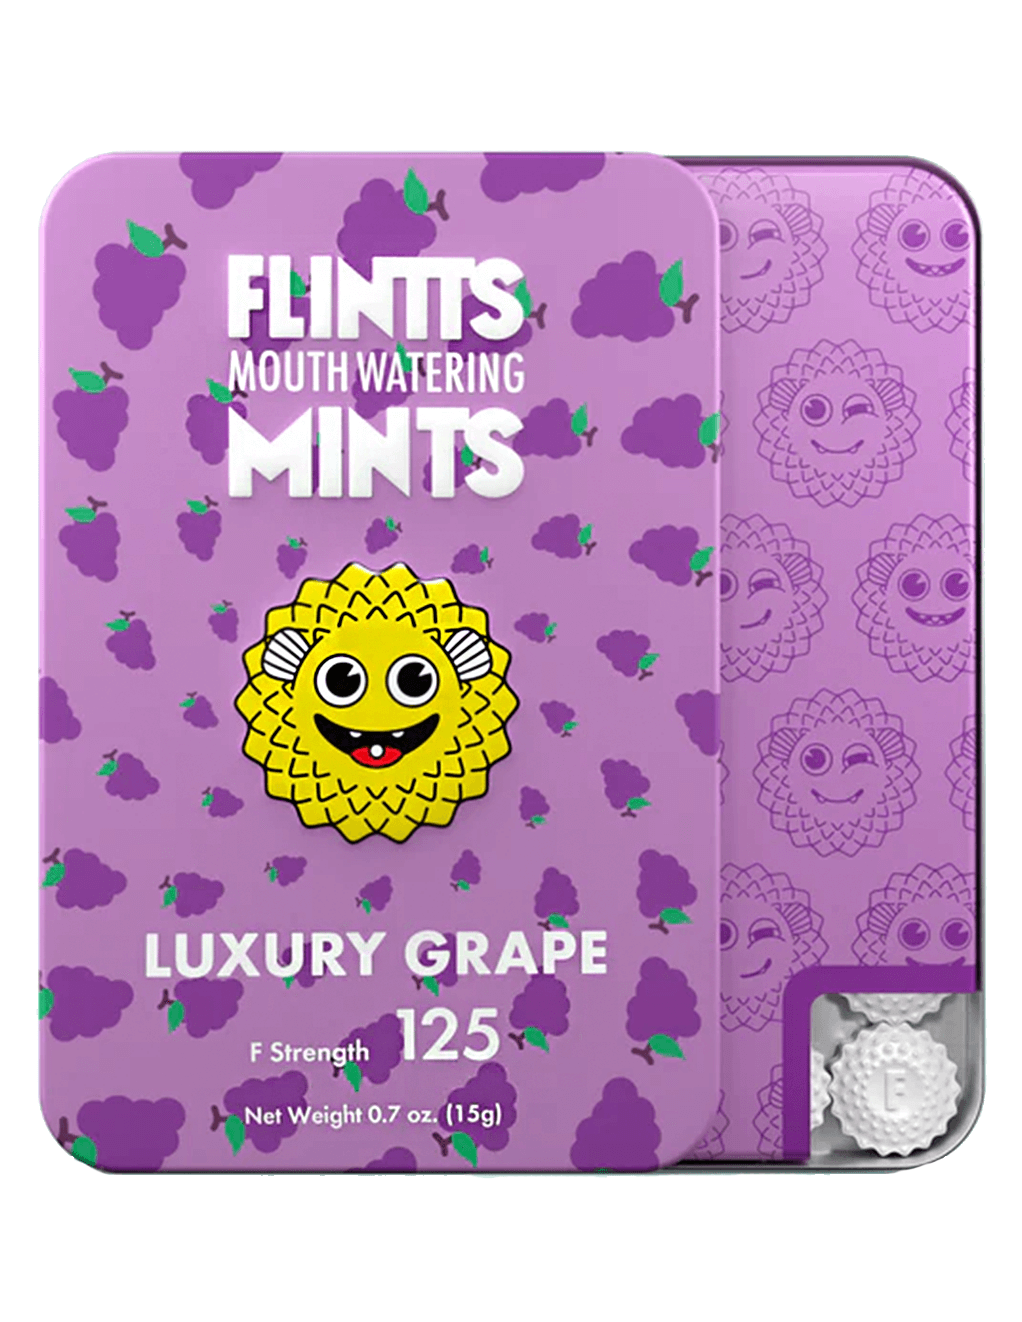 Flintts Mints Luxury Grape F125 - Main